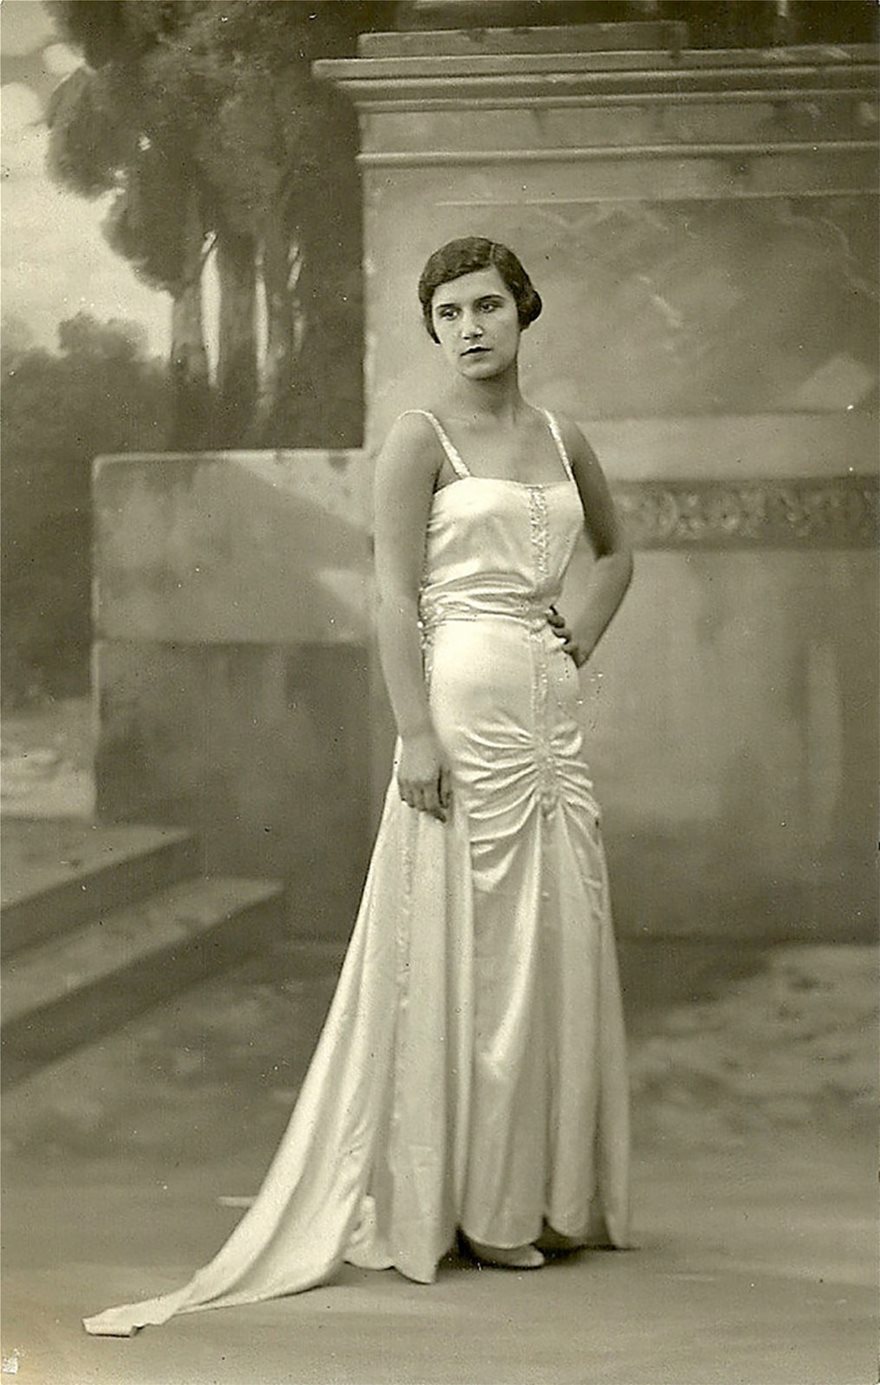 Αλίκη Διπλαράκου: Η Μανιάτισσα καλλονή που πάτησε το άβατο του Αγίου Όρους, έγινε σαν σήμερα η πρώτη Ελληνίδα Μις Ευρώπη - Φωτογραφία 9